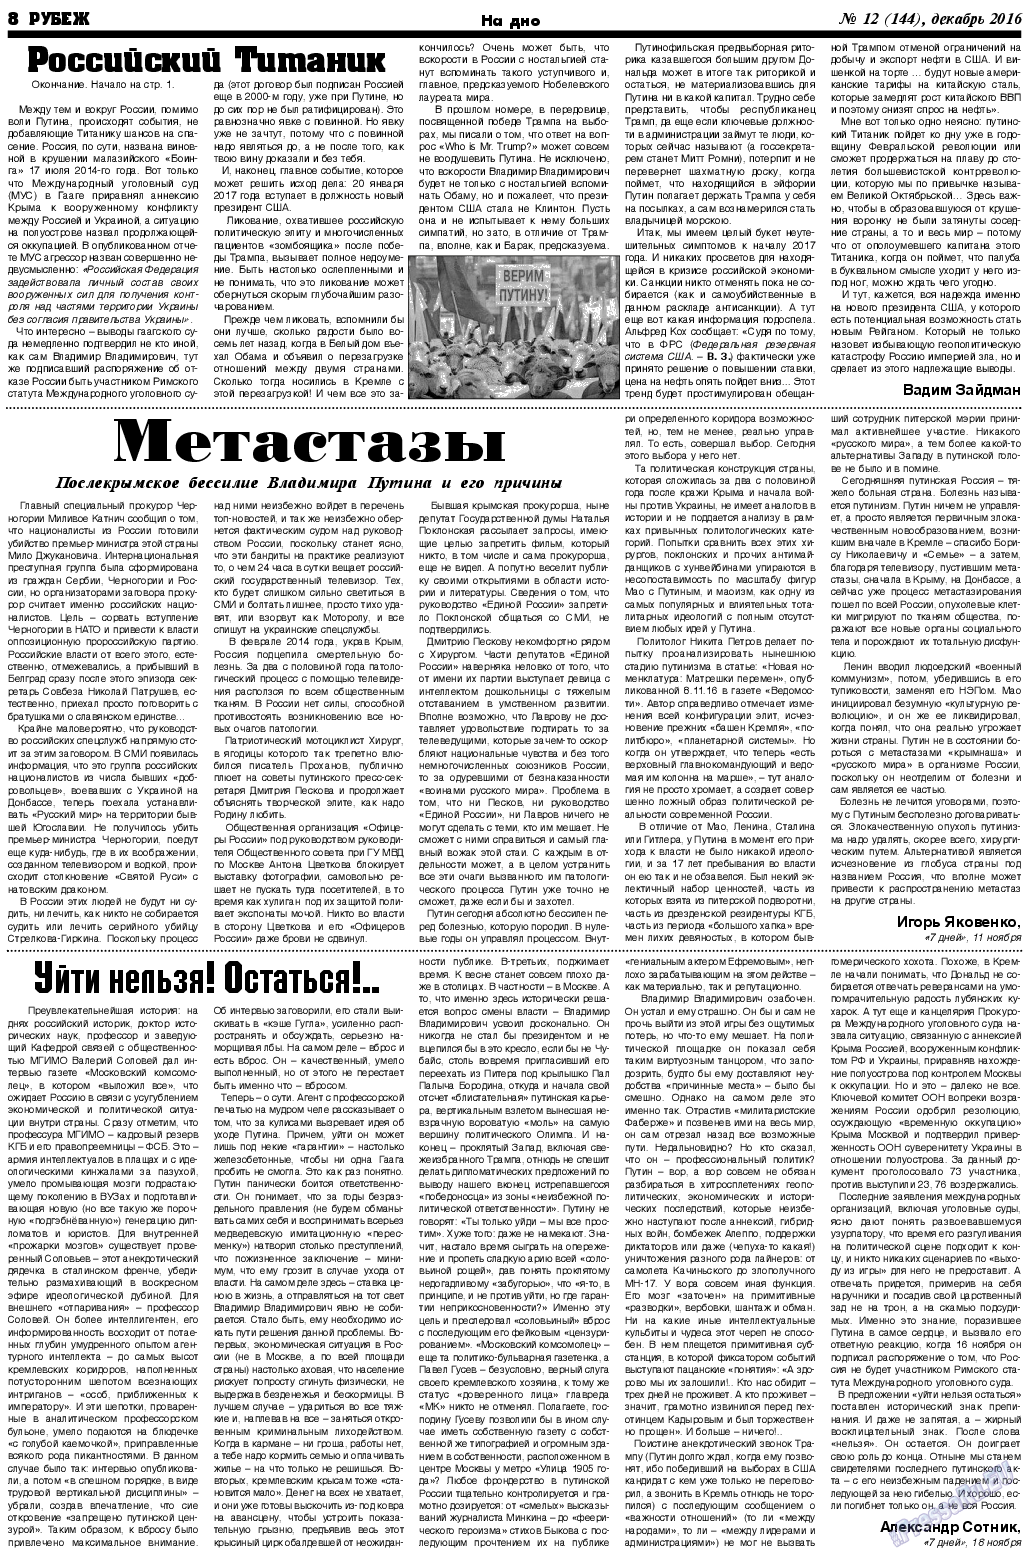 Рубеж (газета). 2016 год, номер 12, стр. 8